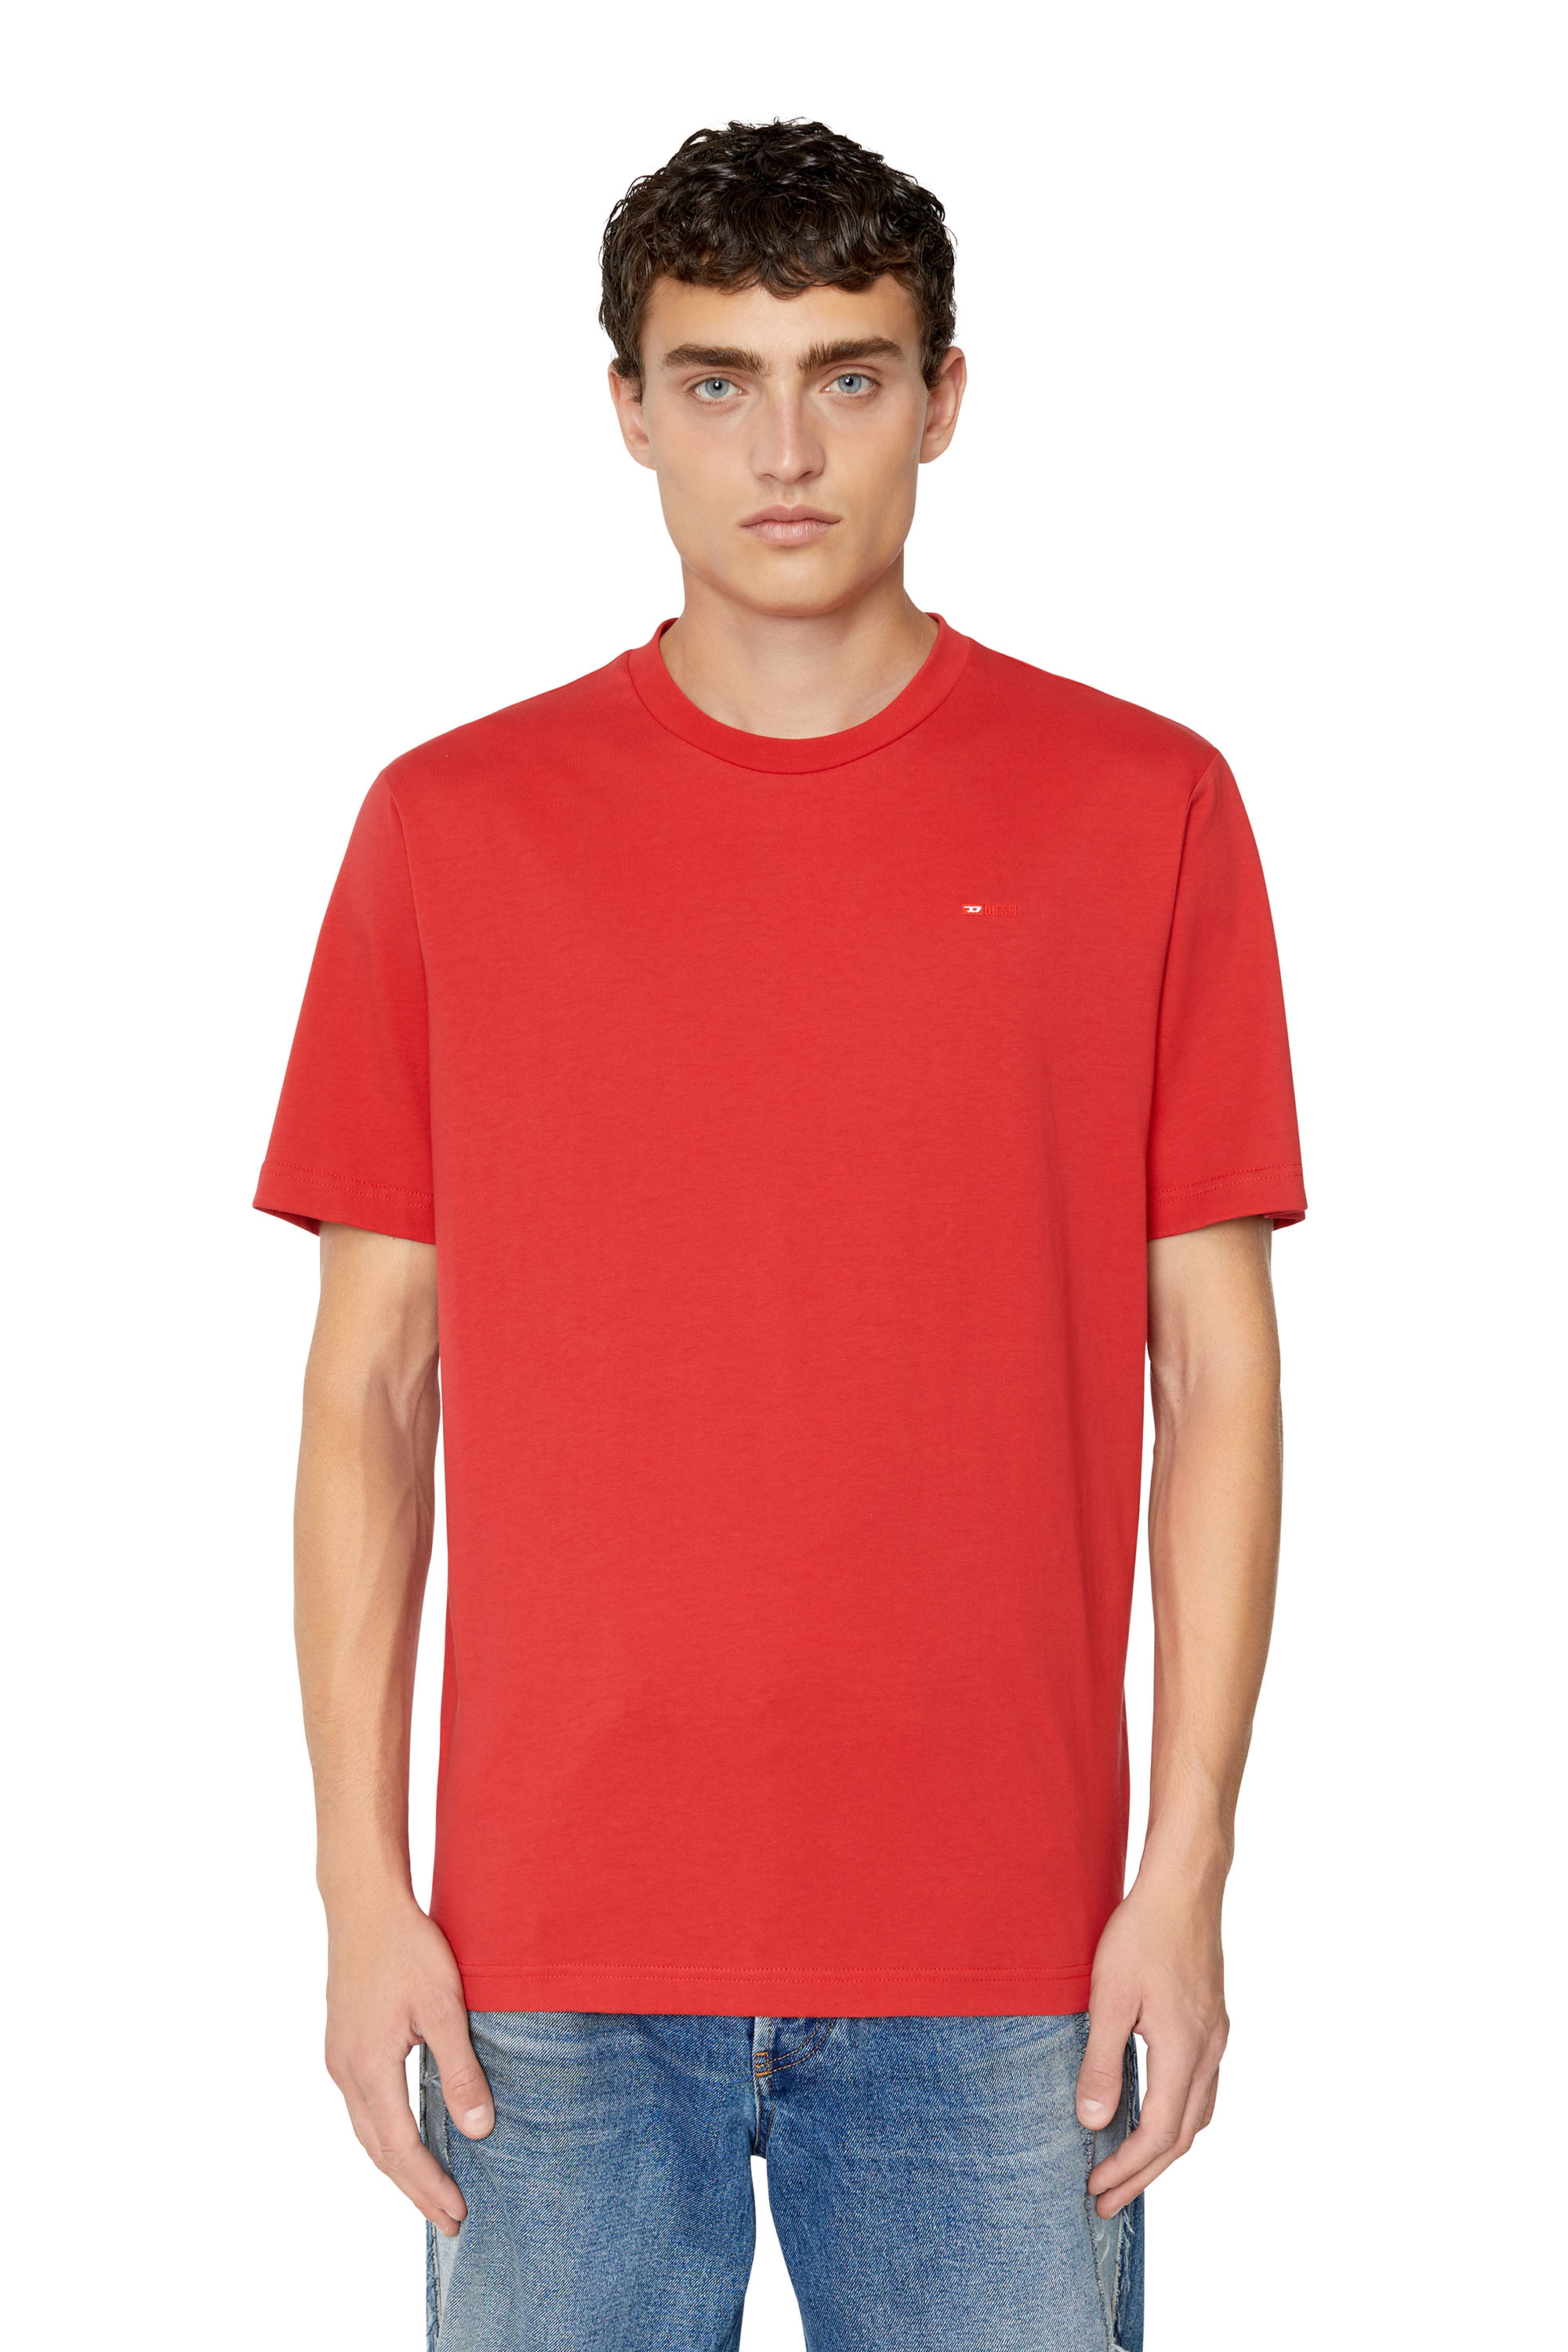 Diesel - Camiseta con logotipo pequeño bordado - Camisetas - Hombre - Rojo